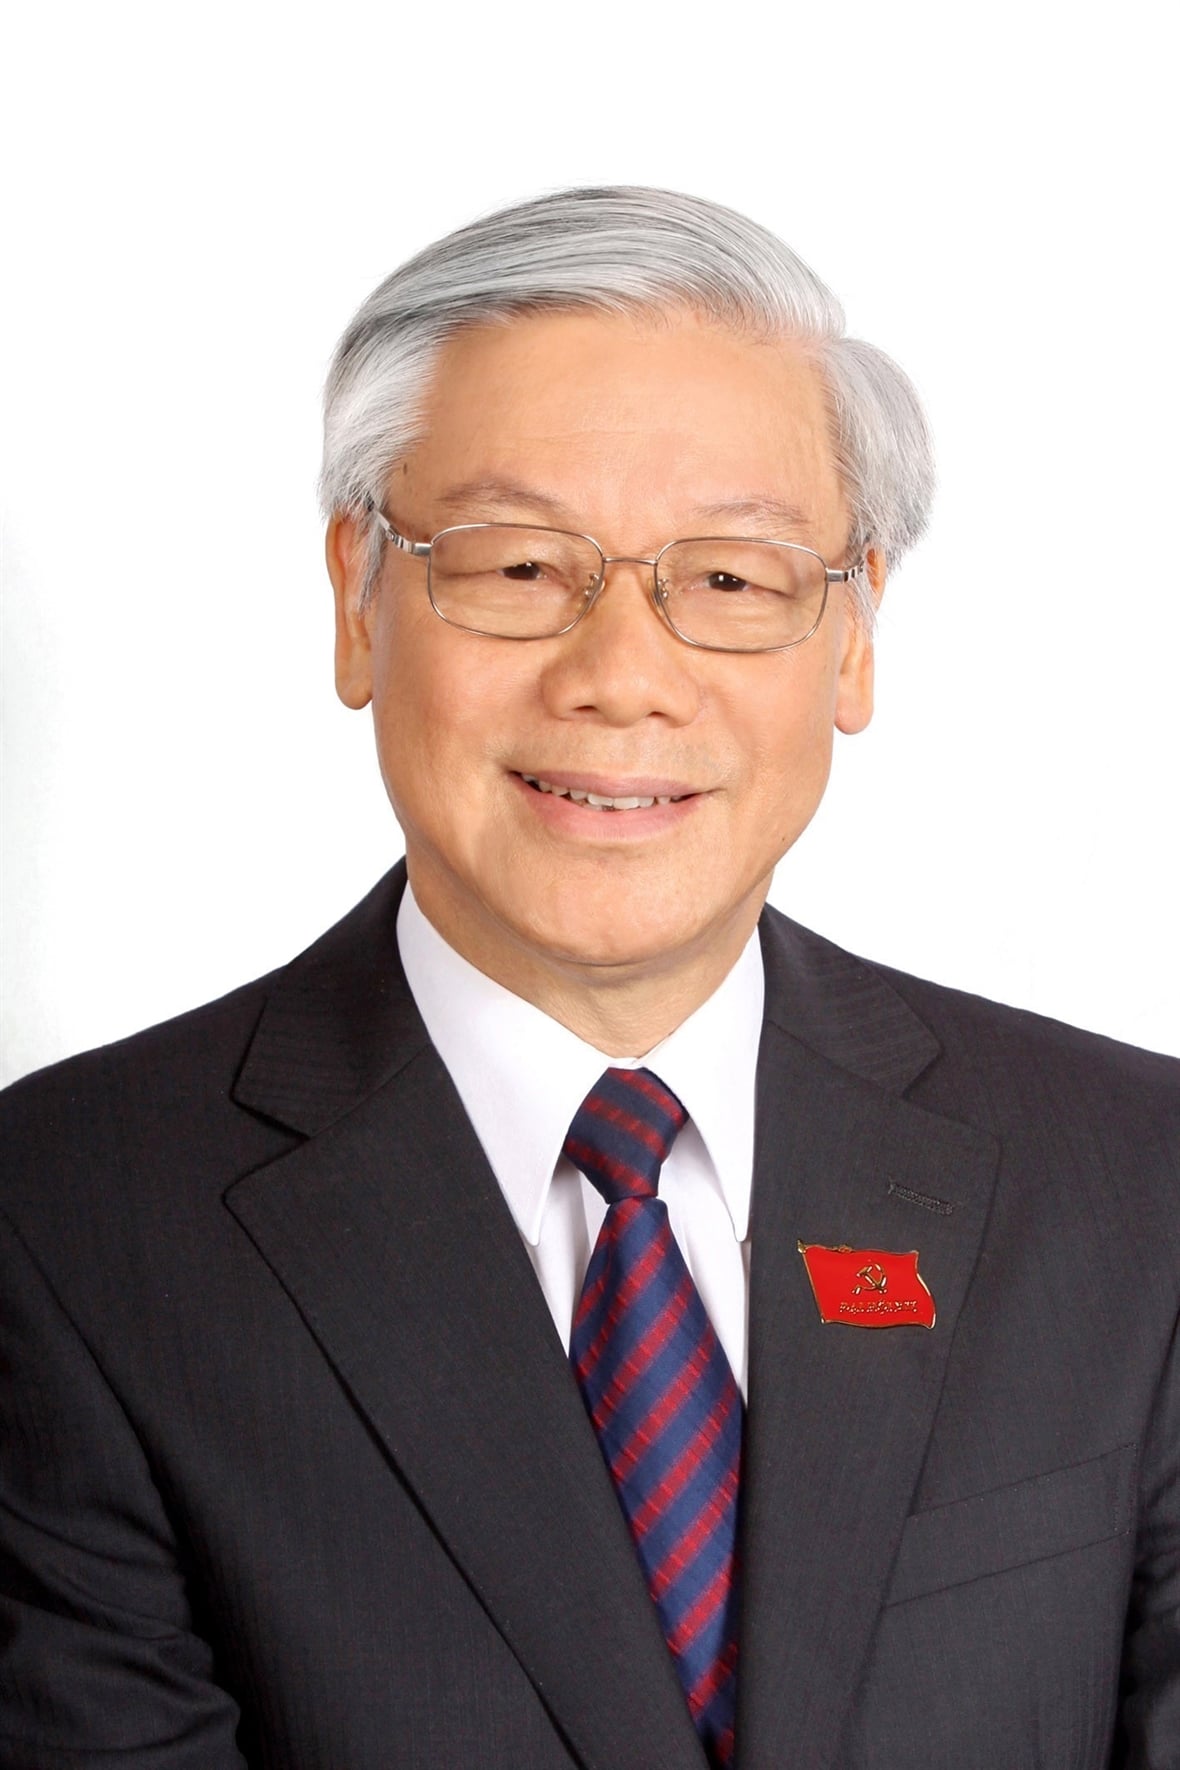 Tổng Bí thư, Chủ tịch nước Nguyễn Phú Trọng tiếp tục được bầu giữ chức Tổng Bí thư Ban Chấp hành Trung ương Đảng Cộng sản Việt Nam khóa XIII